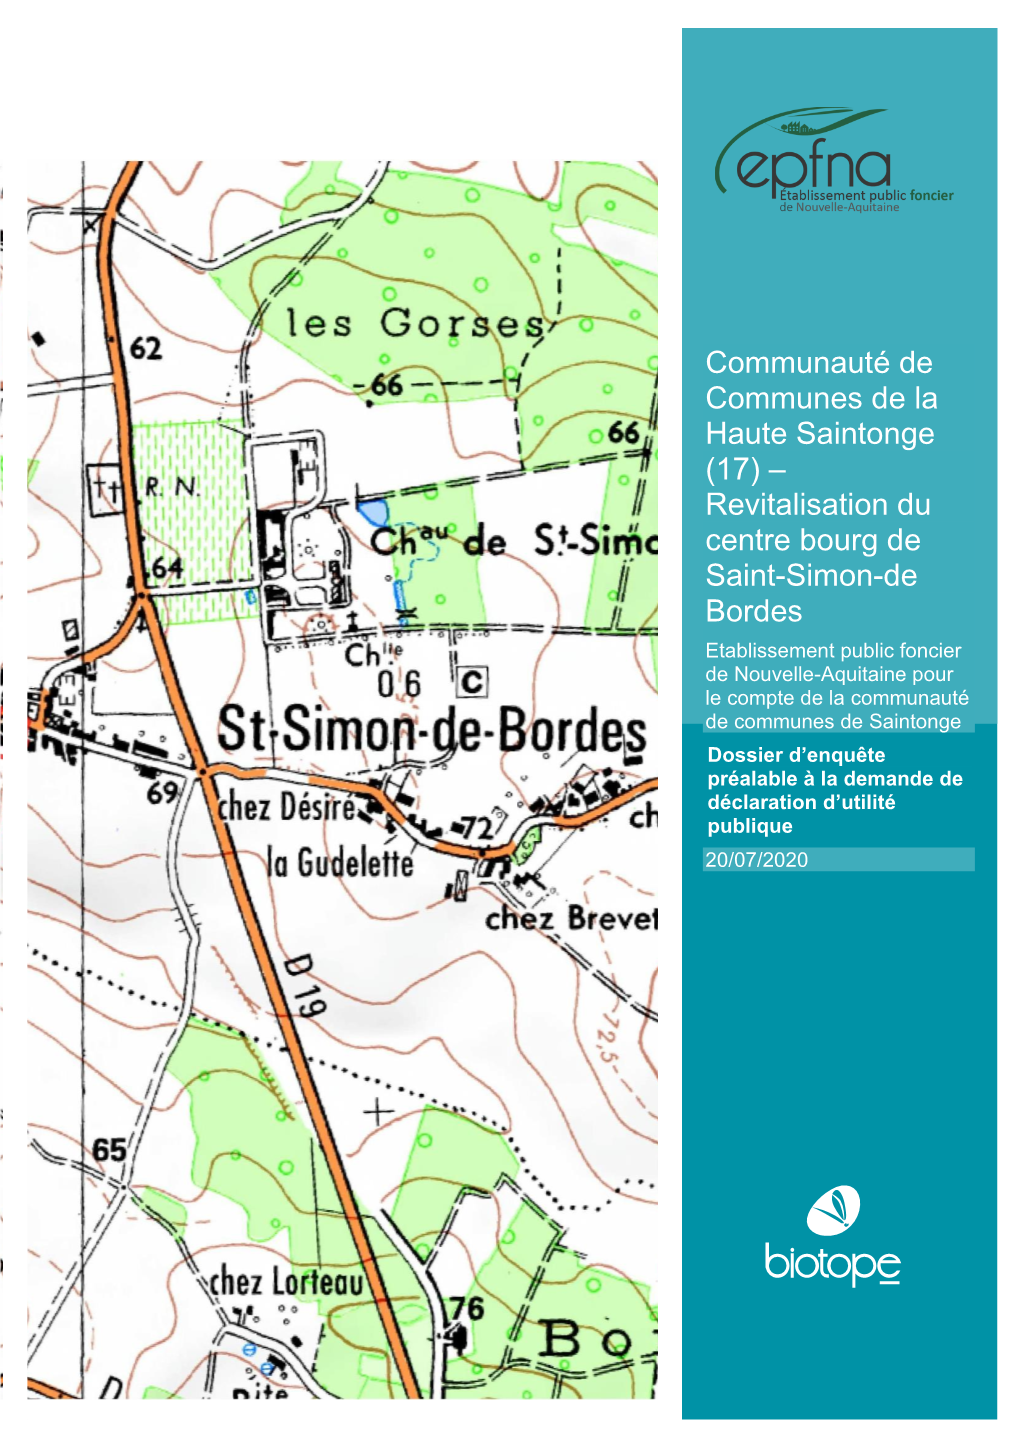 (17) – Revitalisation Du Centre Bourg De Saint-Simon-De Bordes